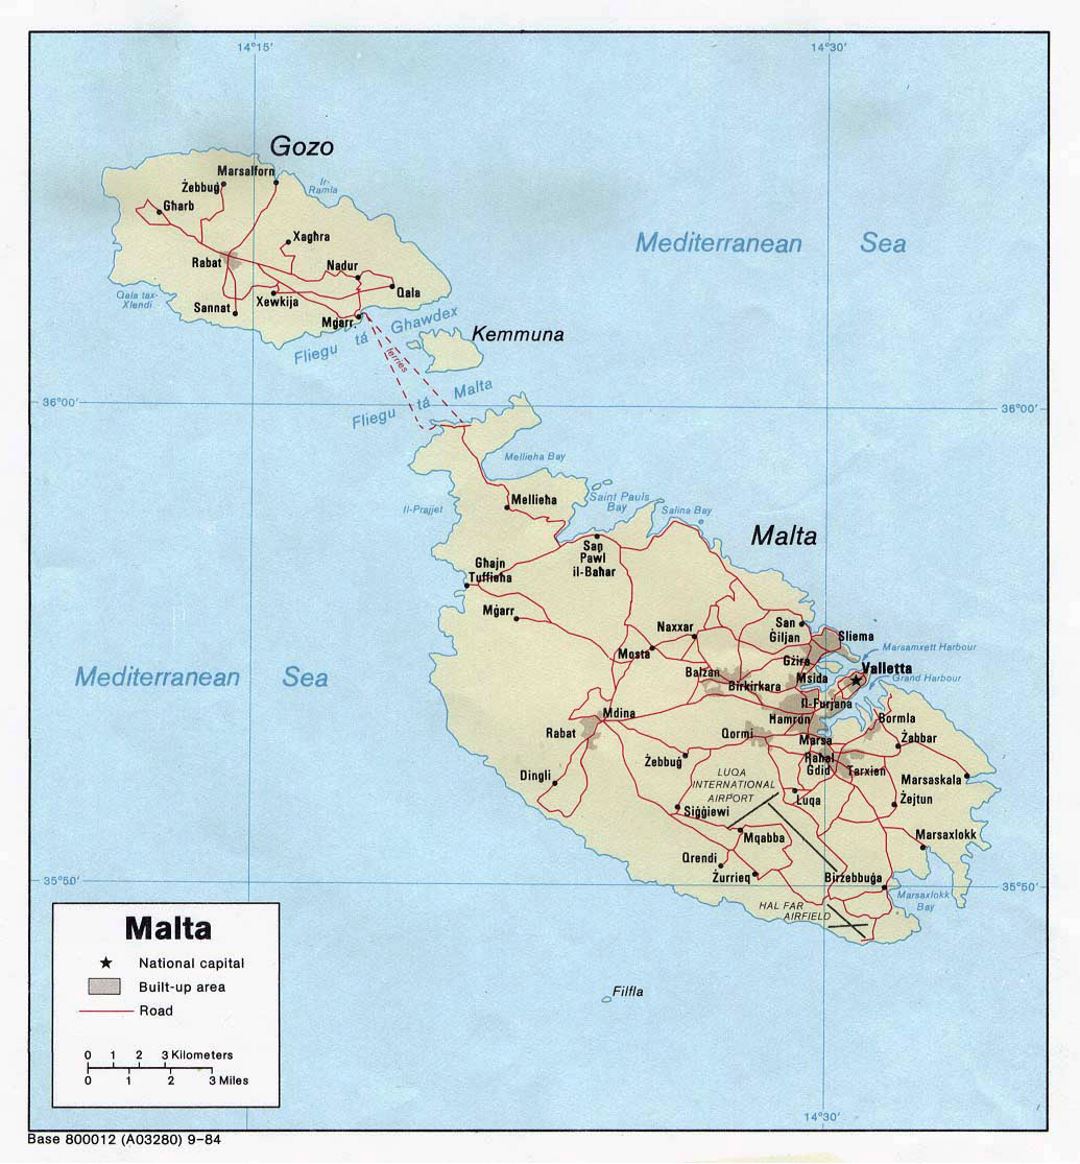 Detallado mapa político de Malta con carreteras, ciudades y pueblos - 1984